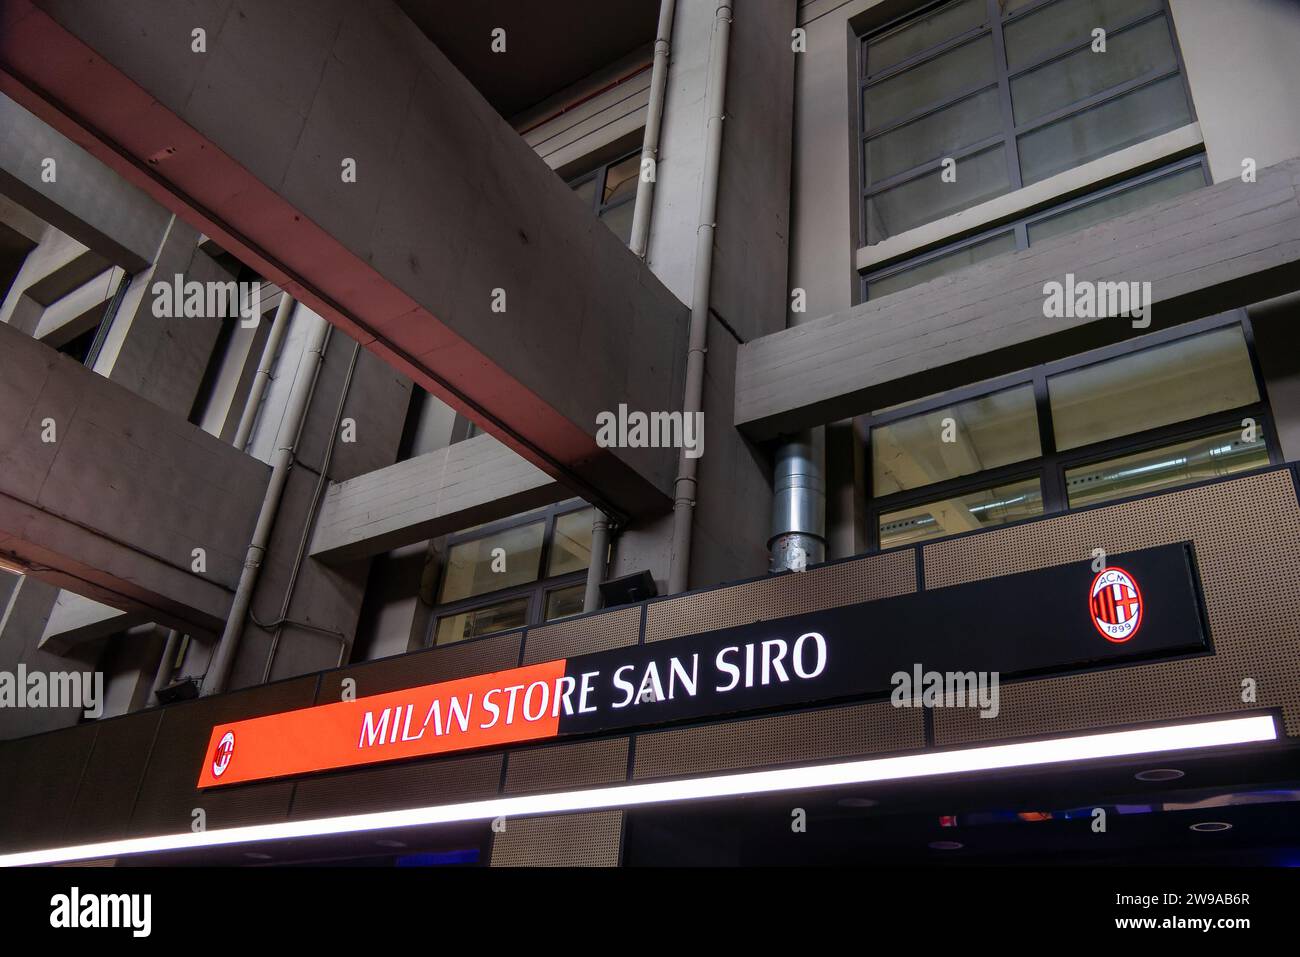 Milan Store San Siro